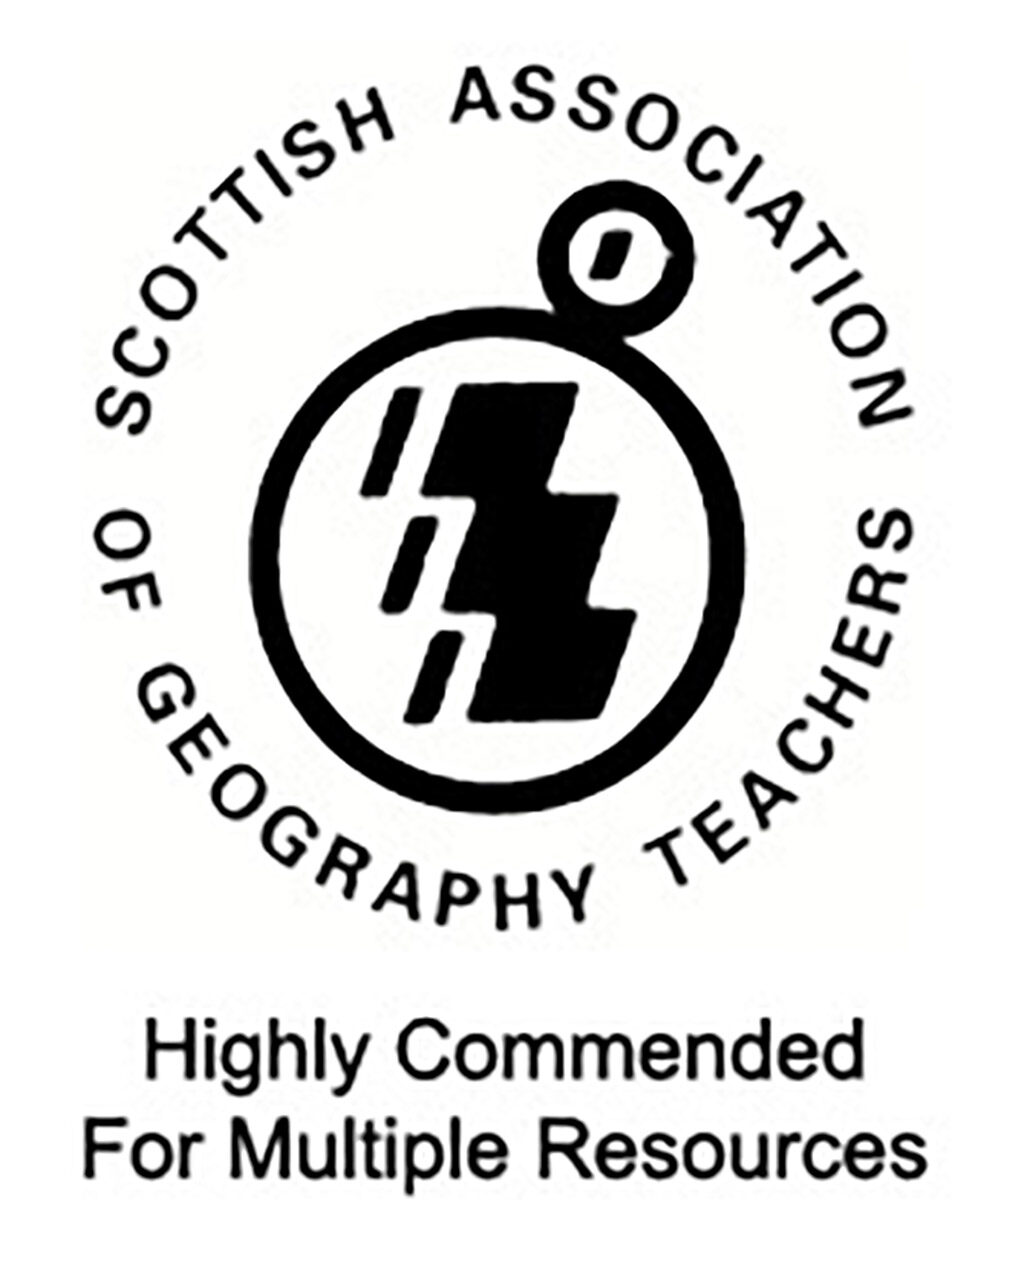 sagt-highly-commended-logo